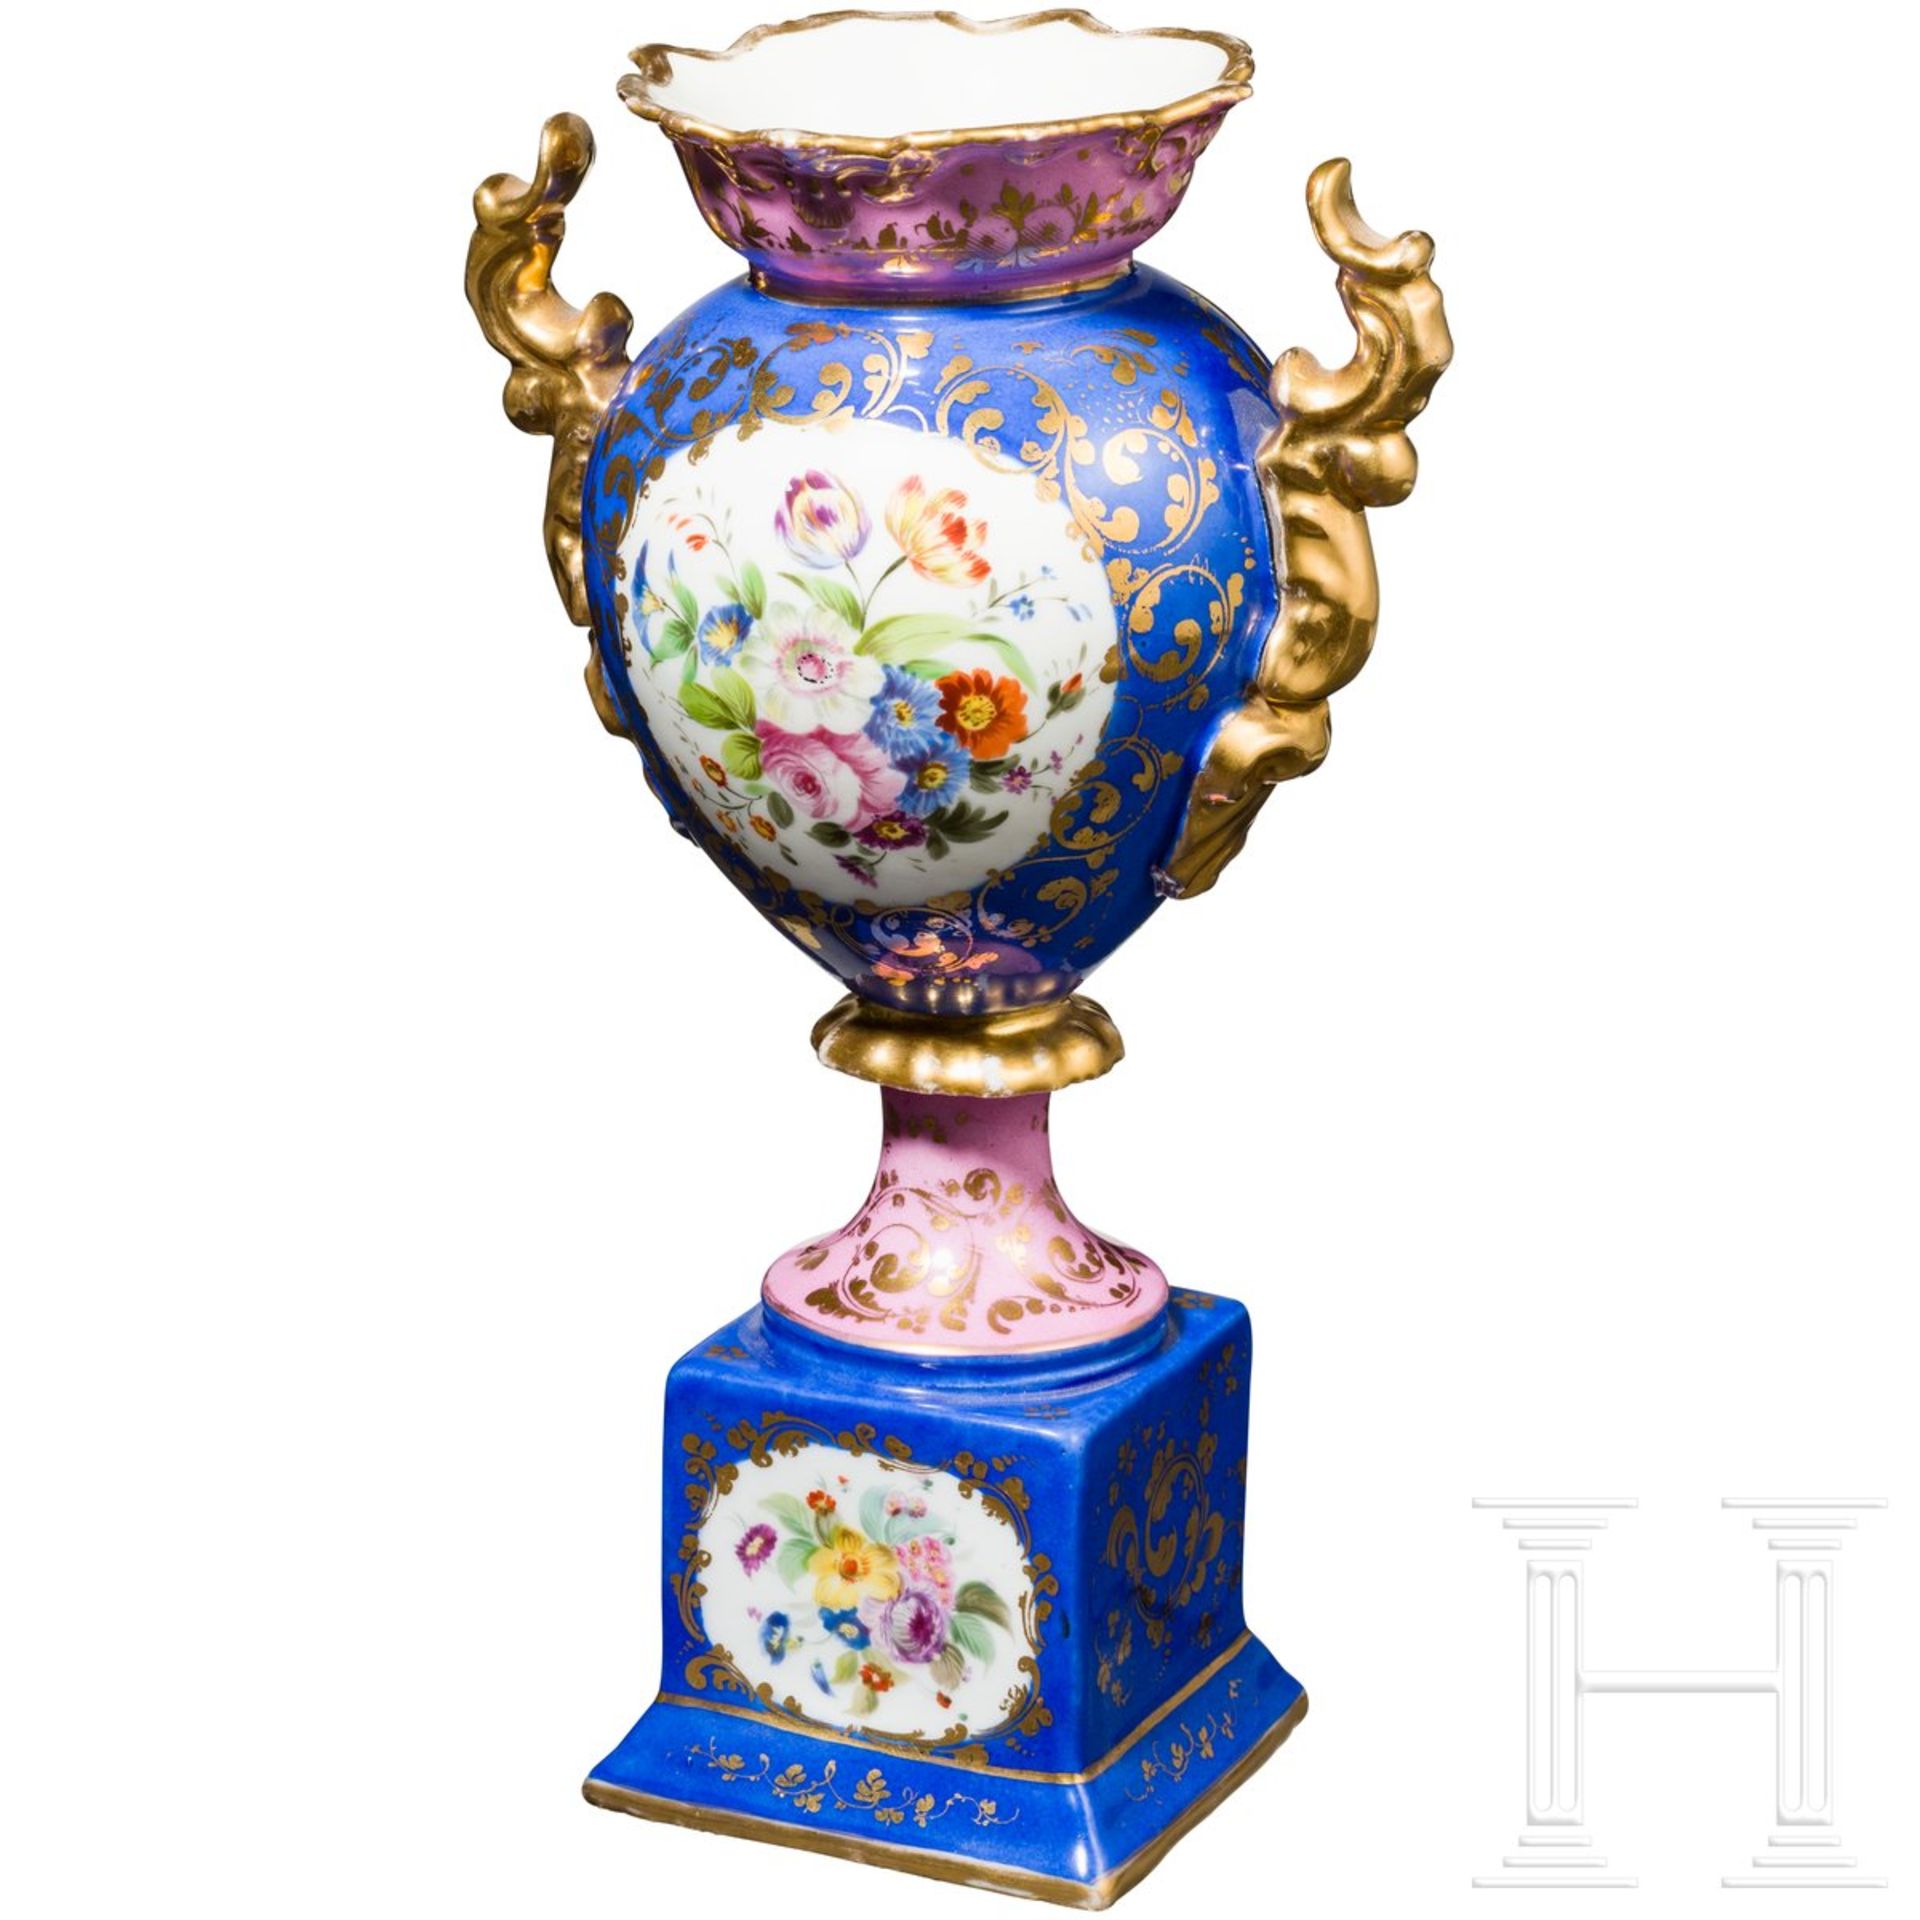 Handbemalte Vase, russische Privatmanufaktur, Russland, Mitte 19. Jhdt. - Bild 2 aus 3